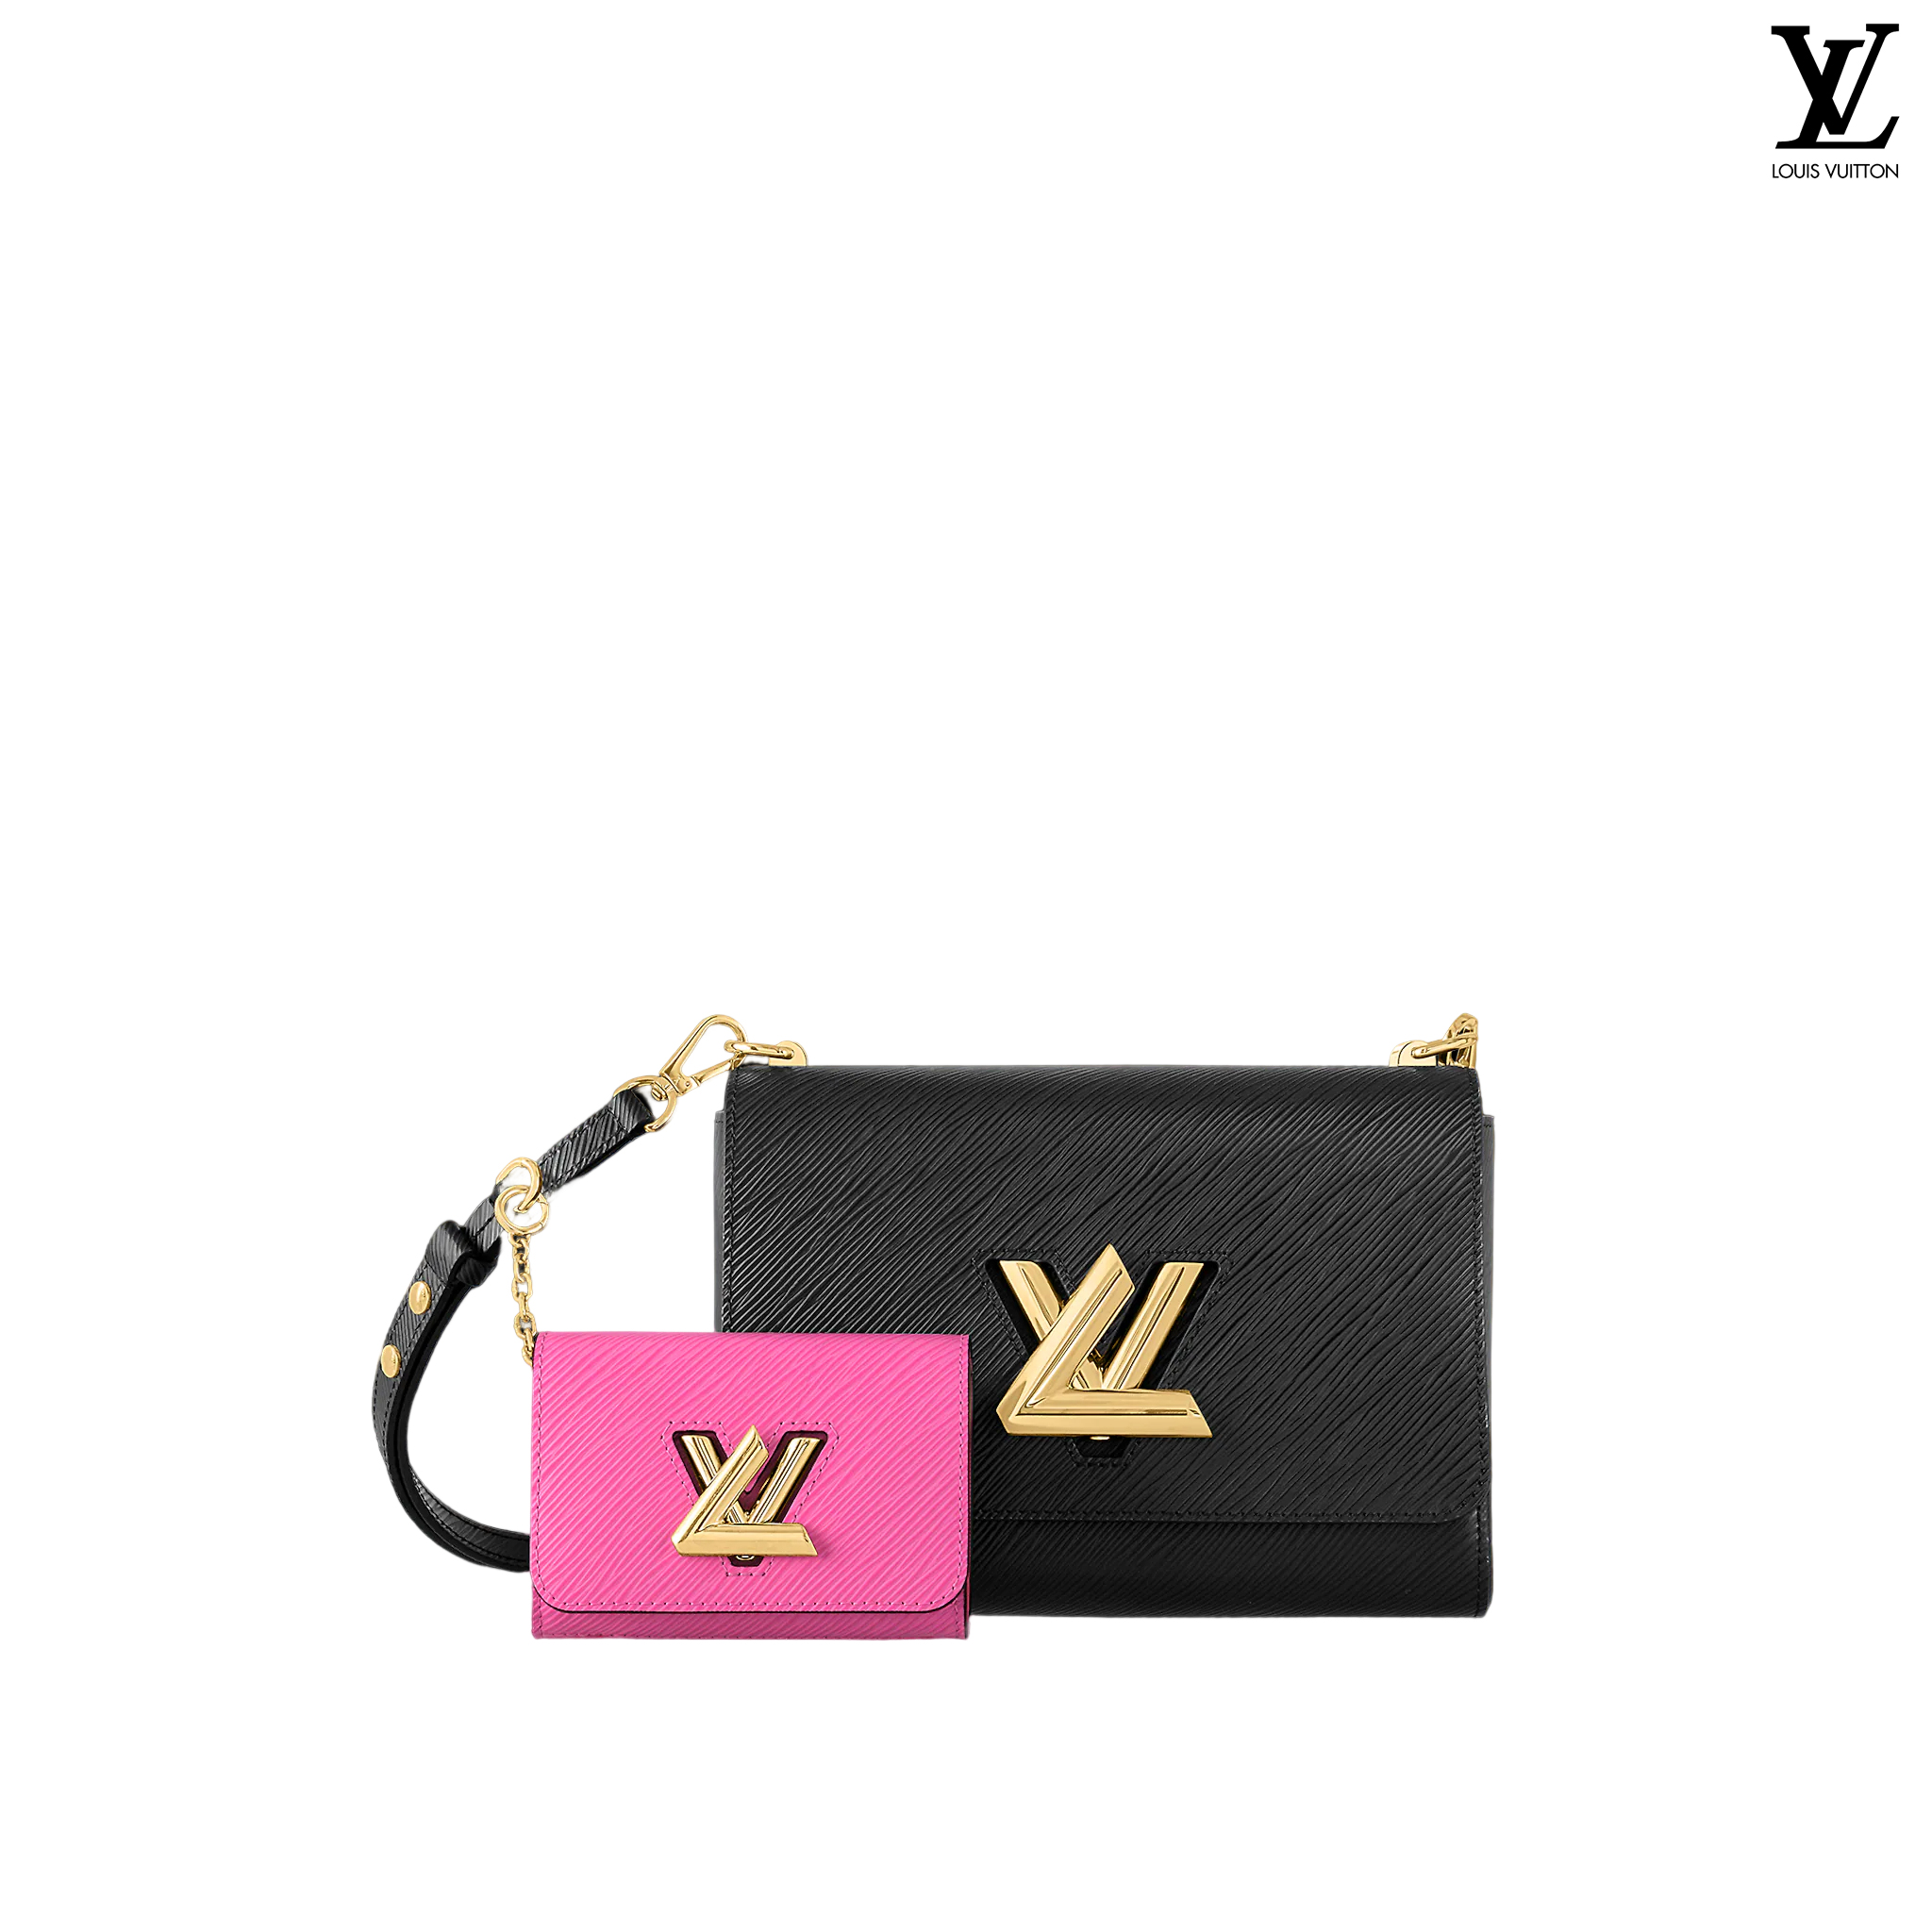 Louis Vuitton Twist PM Epi leather Shoulder bags